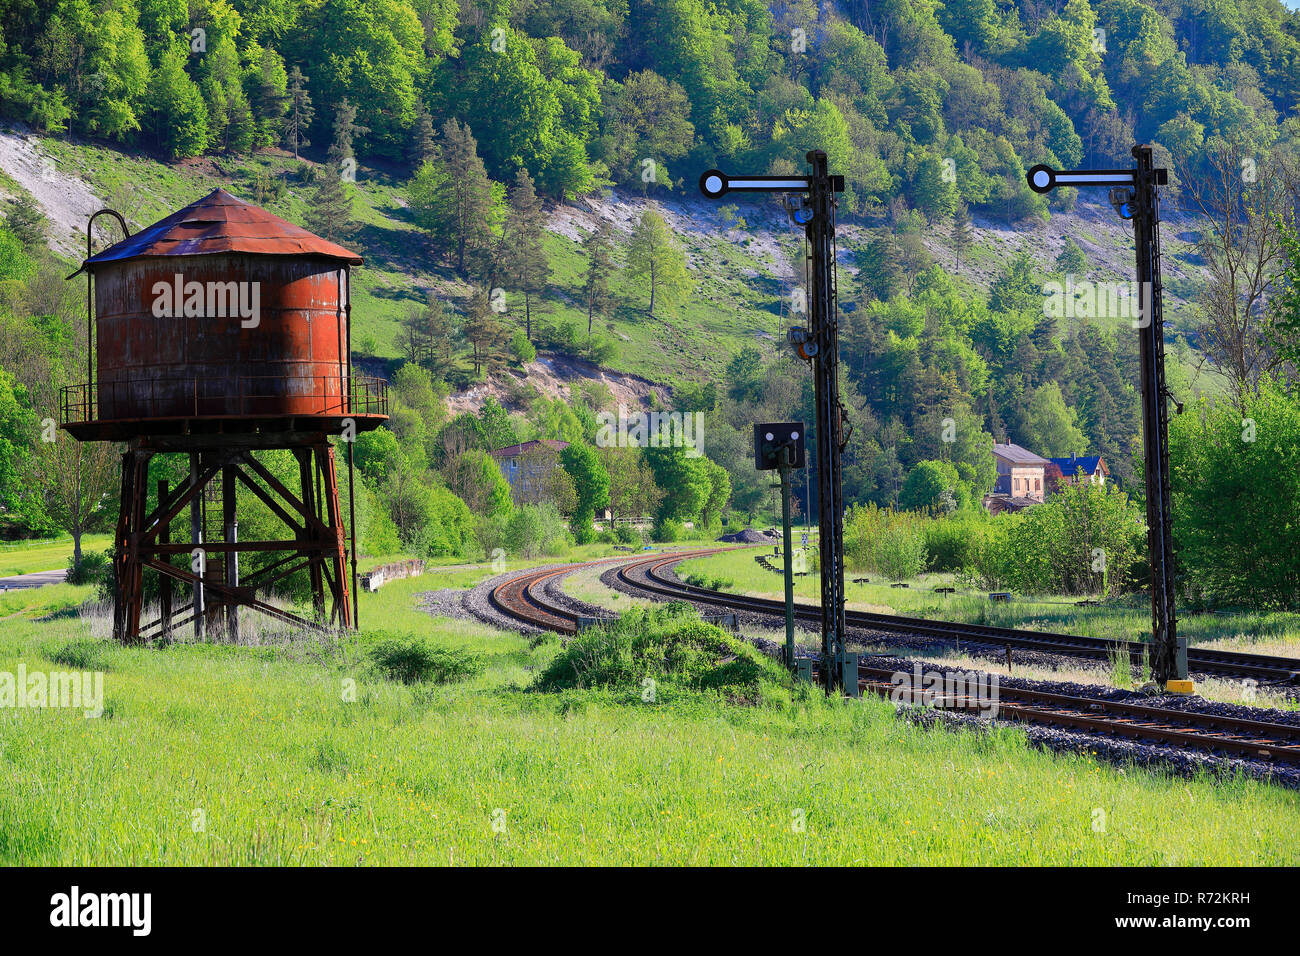 Danubio vally, acqua di alimentazione serbatoio, linea ferroviaria, Hausen im Tal, Baden-Württemberg, Germania Foto Stock